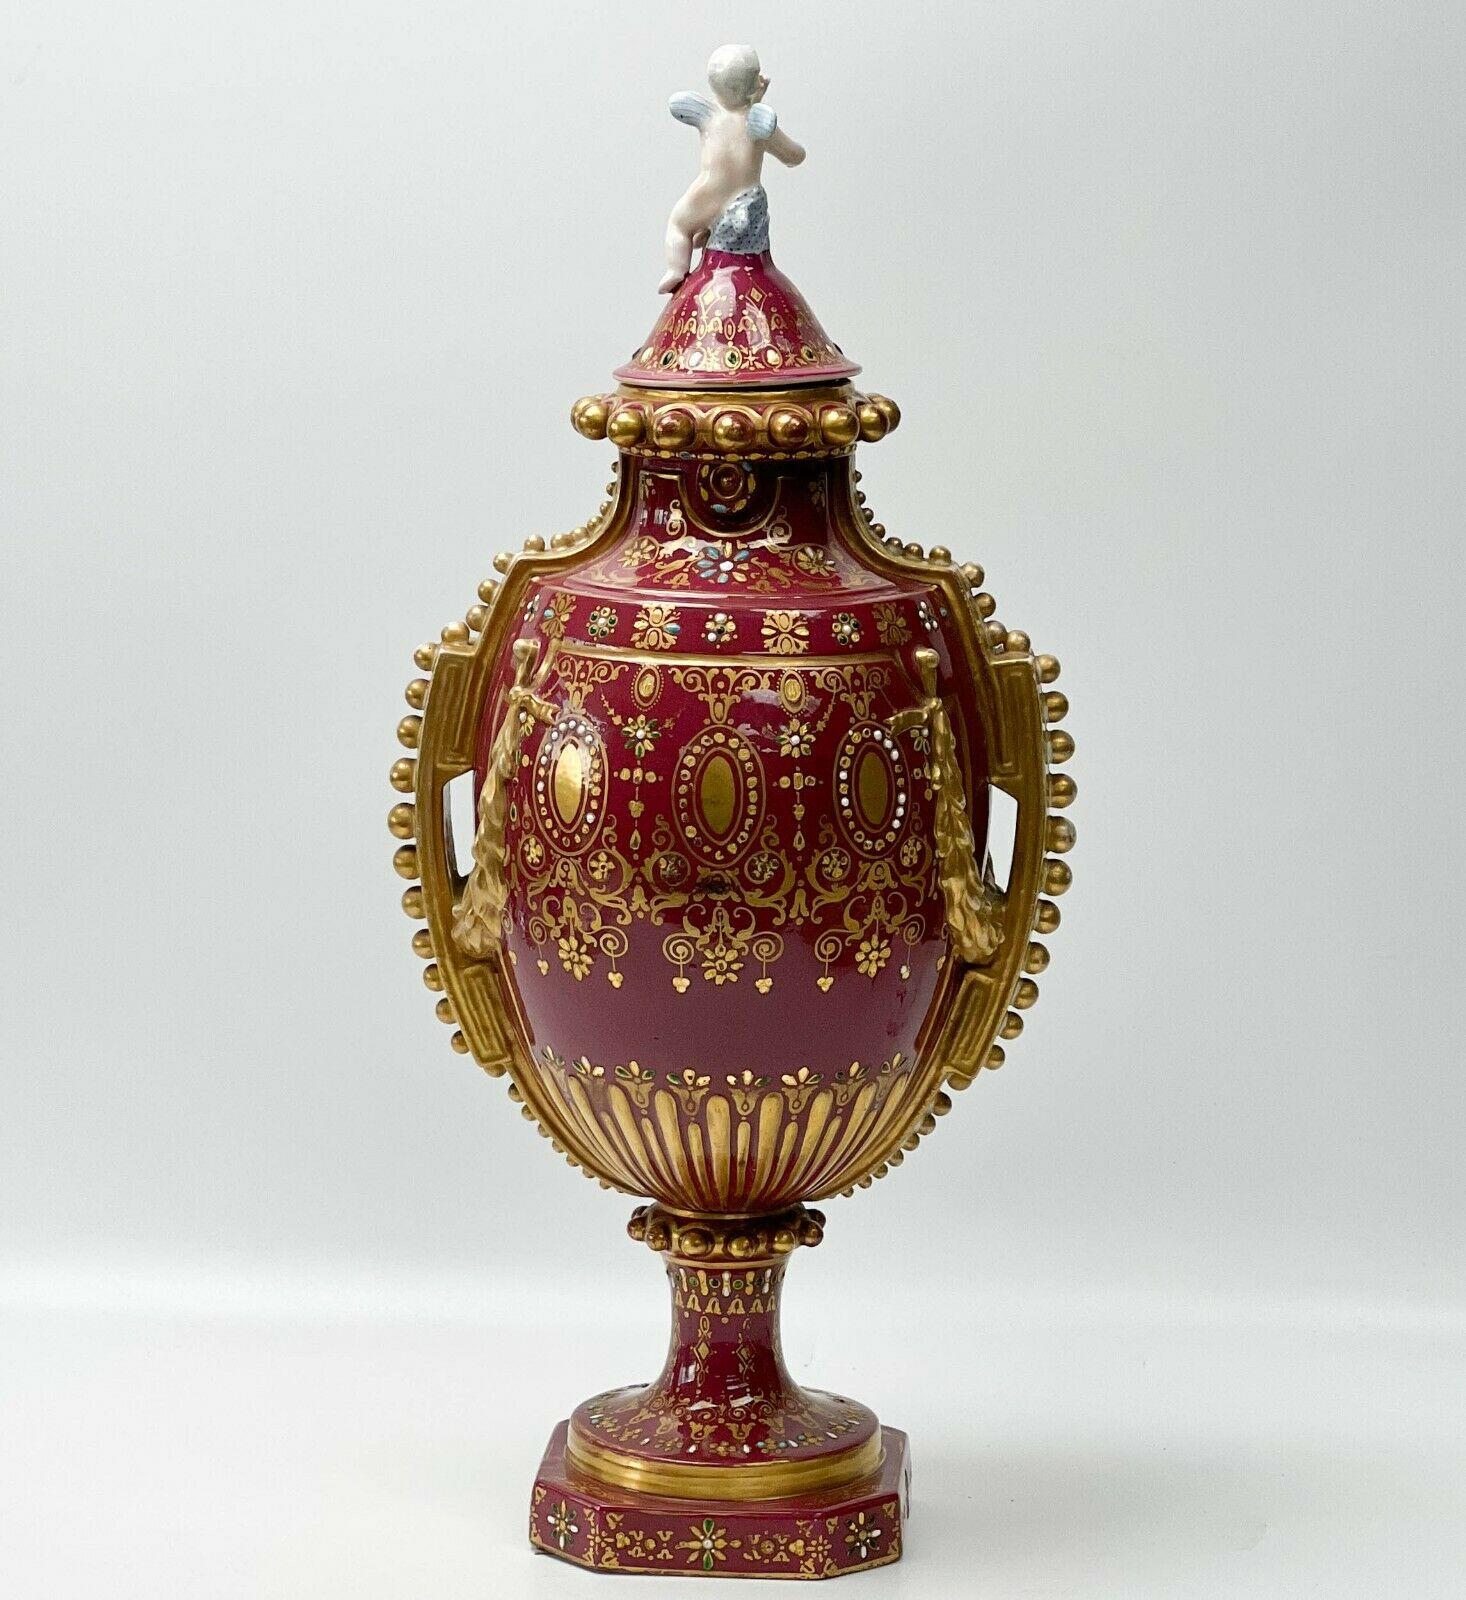 Urne couverte à deux anses en porcelaine de Sèvres peinte à la main, vers 1900

Un fond de couleur magenta profond avec une décoration de guirlande dorée en relief, des motifs dorés élaborés tout autour avec des décorations en émail turquoise,